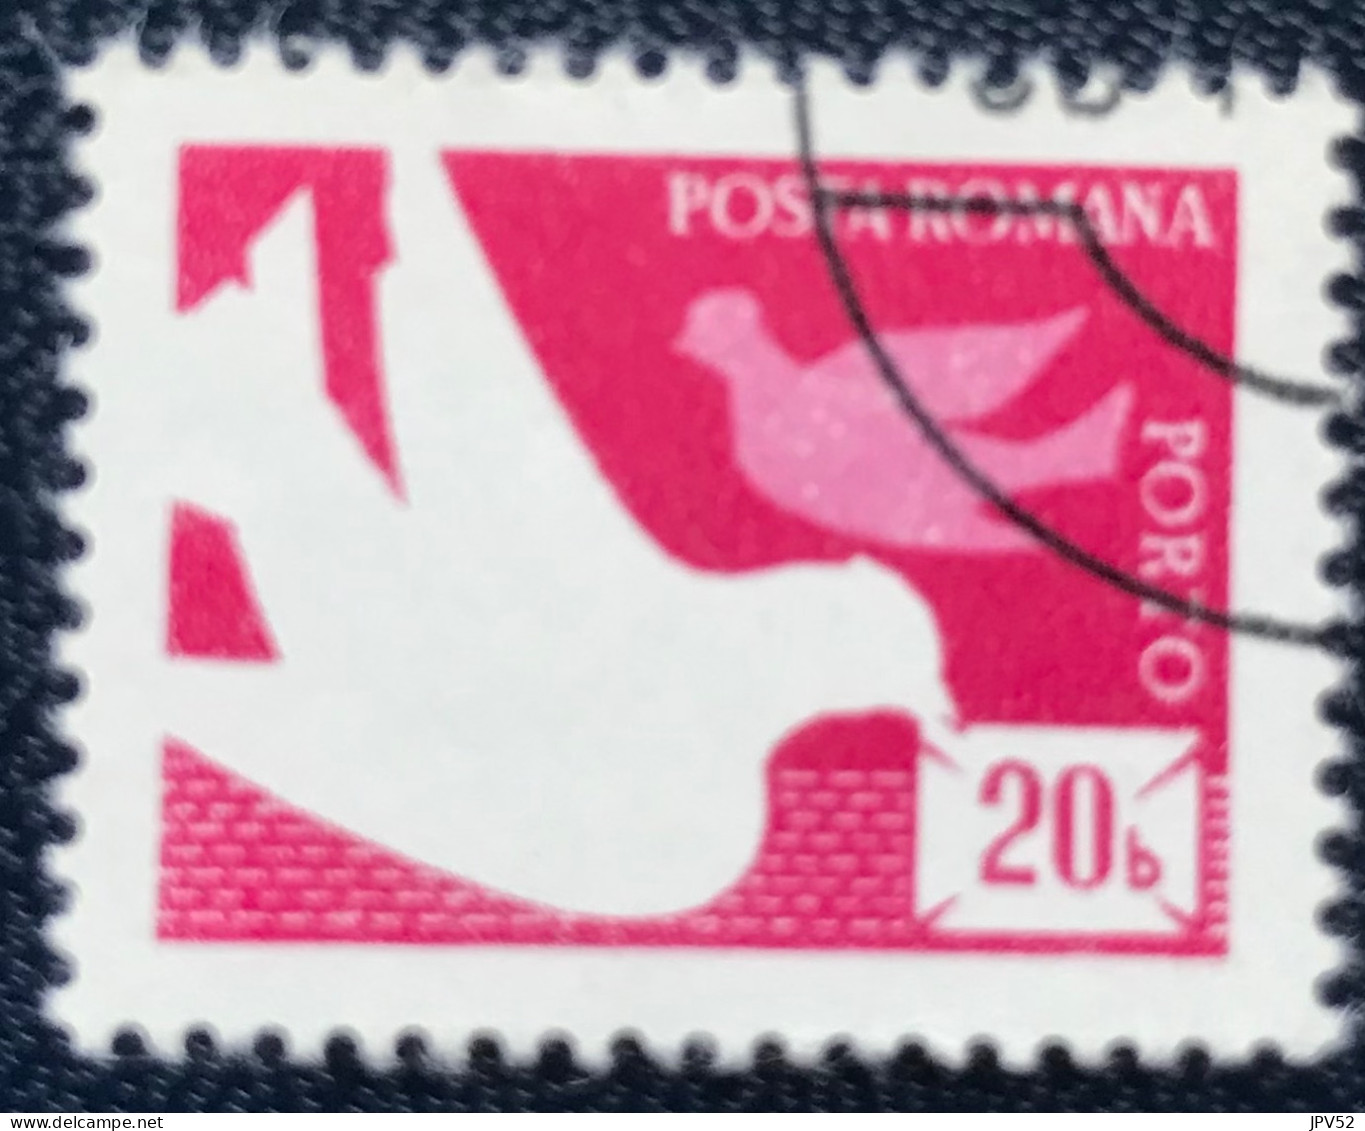 Romana - Roemenië - C14/54 - 1974 - (°)used - Michel 121 - Postduiven - Portomarken